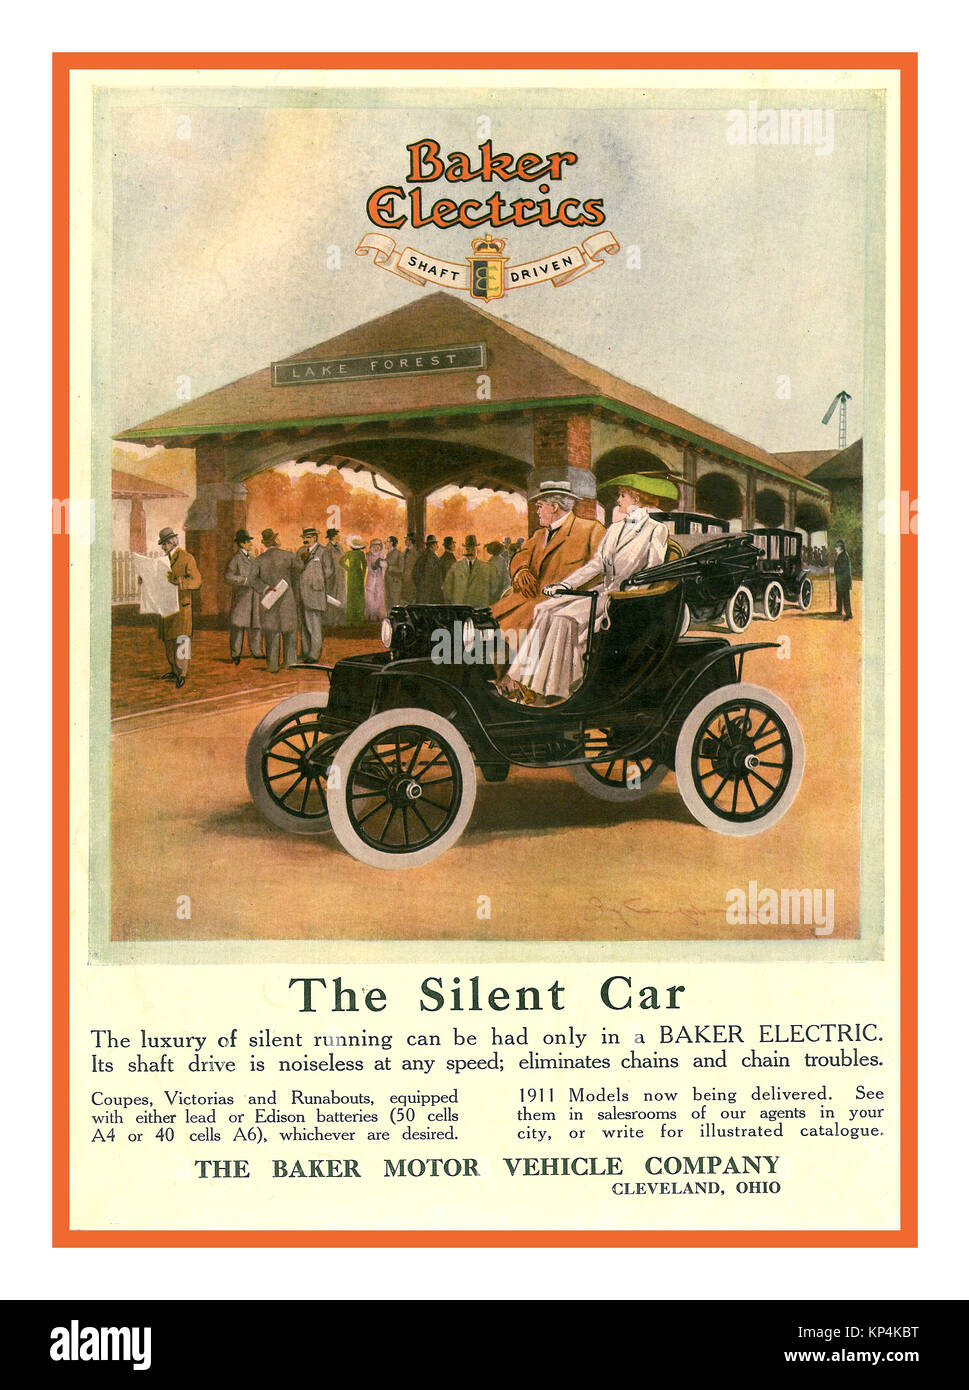 Voiture électrique vintage 1900 Vintage toutes les voiture électrique Poster 1911 'Baker Electrics' Baker Motor Vehicle Company un fabricant d'automobiles électriques ère laiton à Cleveland, Ohio de 1899 à 1914. Le seul moteur électrique, situé au centre de la voiture, produit 0,75 hp (0,6 kW) Banque D'Images